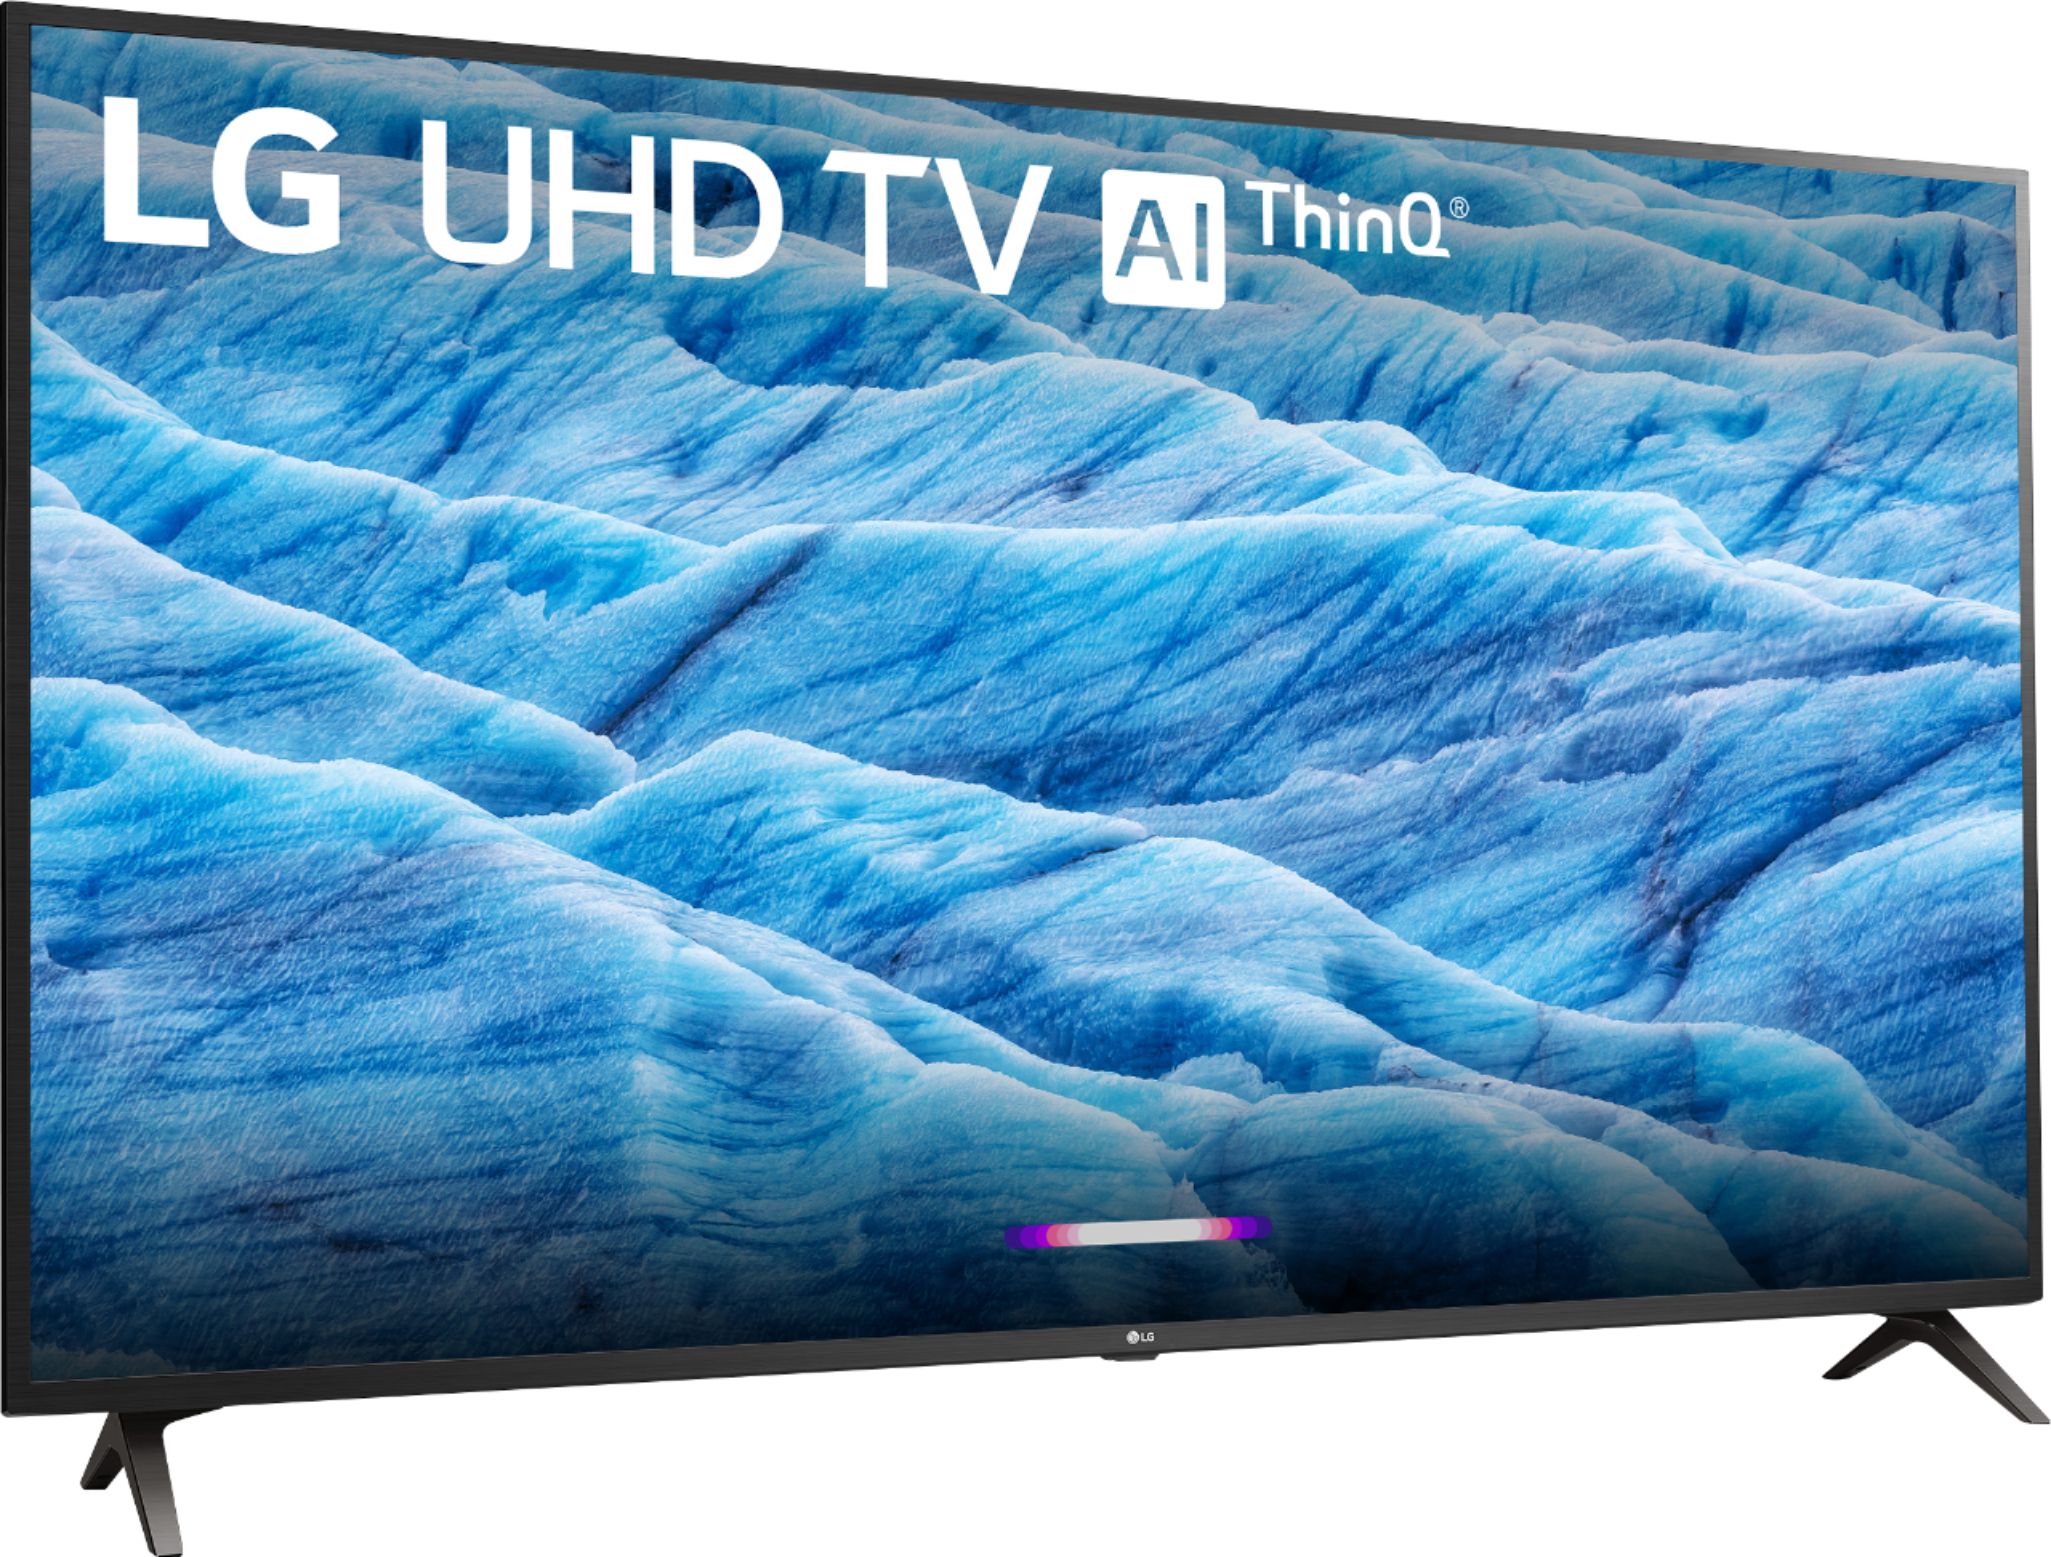 LG UHD TV 65 4K Smart AI - 65UN7310PSC